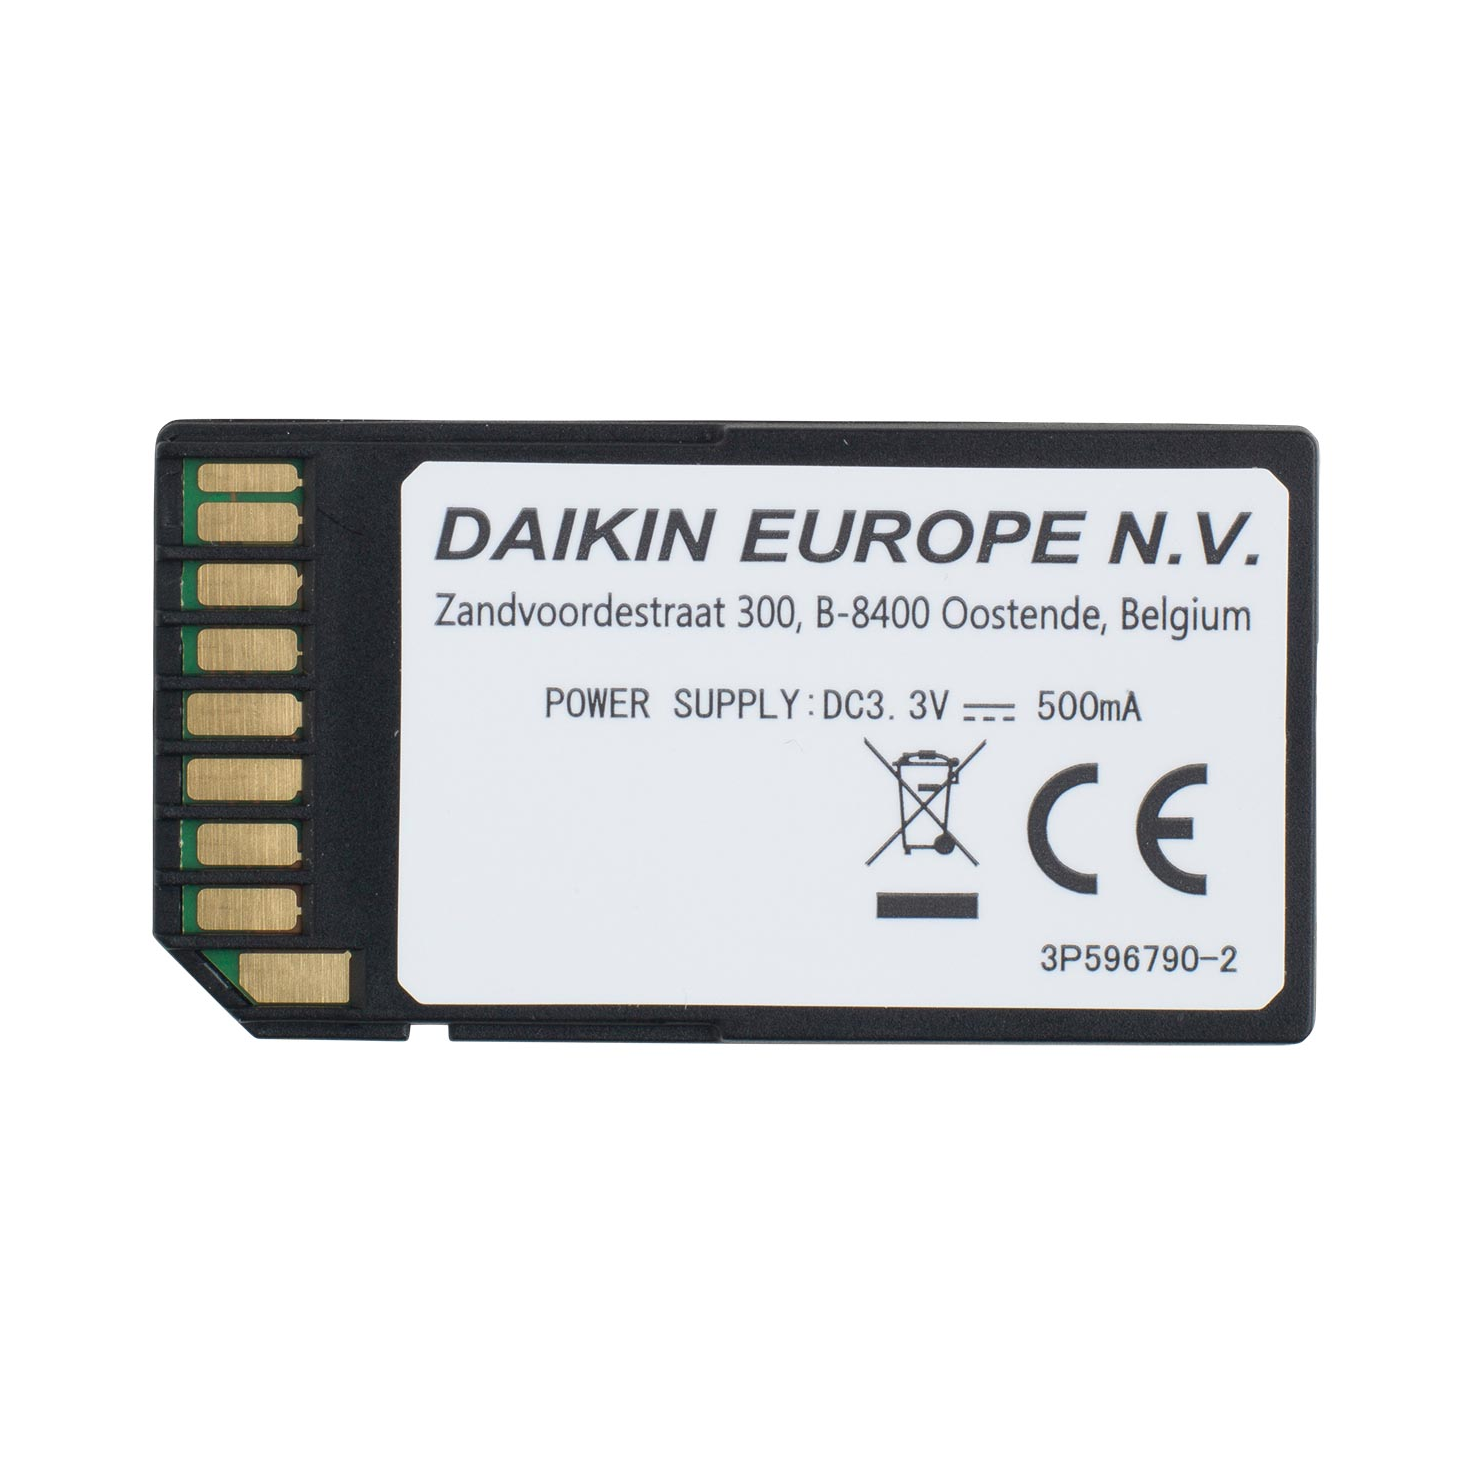 Daikin-Einsteck-Wlan-Adapter-BRP069A78